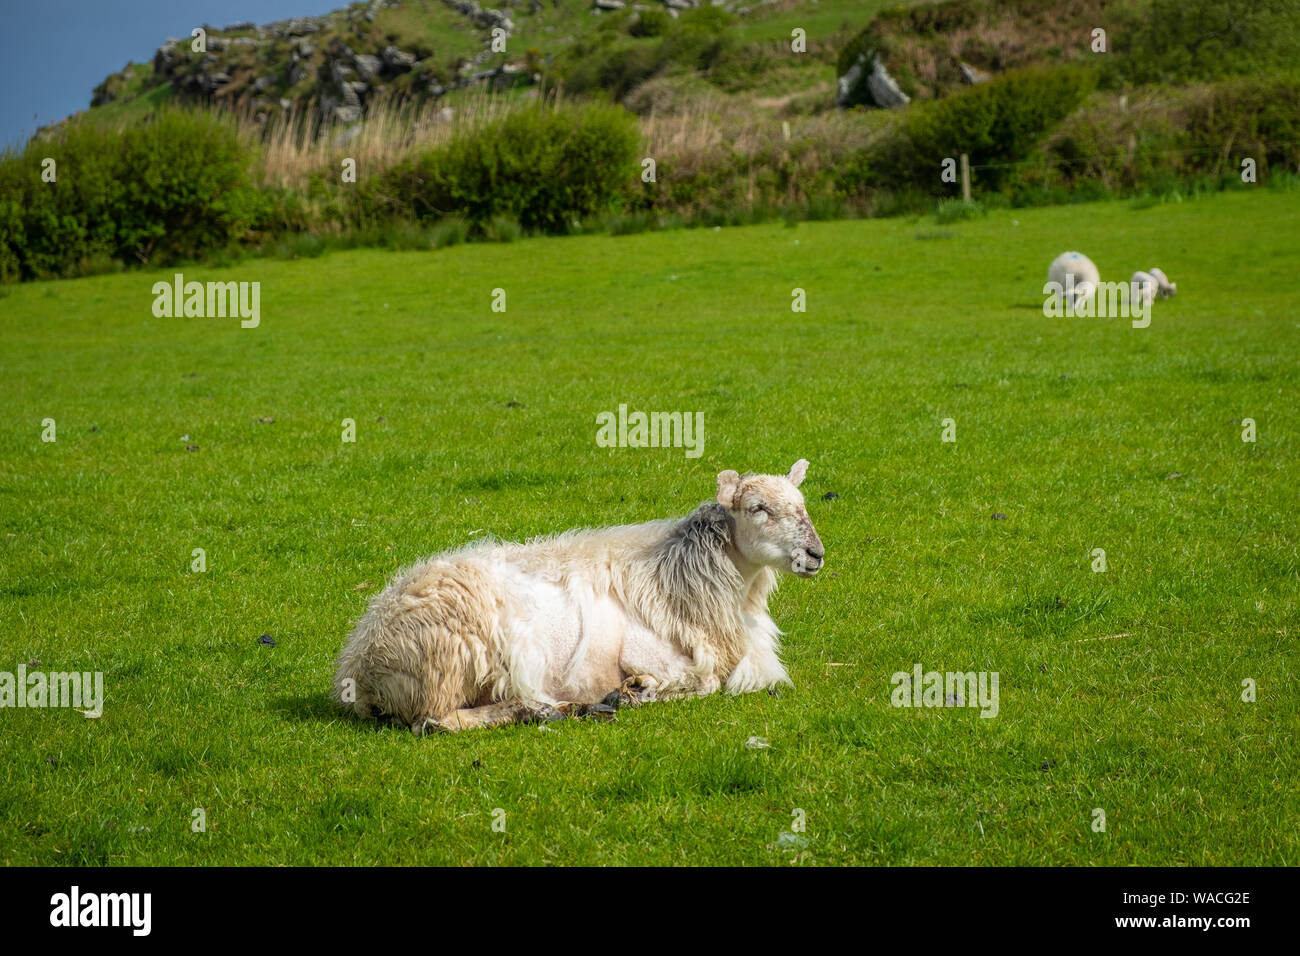 Ovejas y corderos en Irelands campos verdes y en la costa atlántica Foto de stock